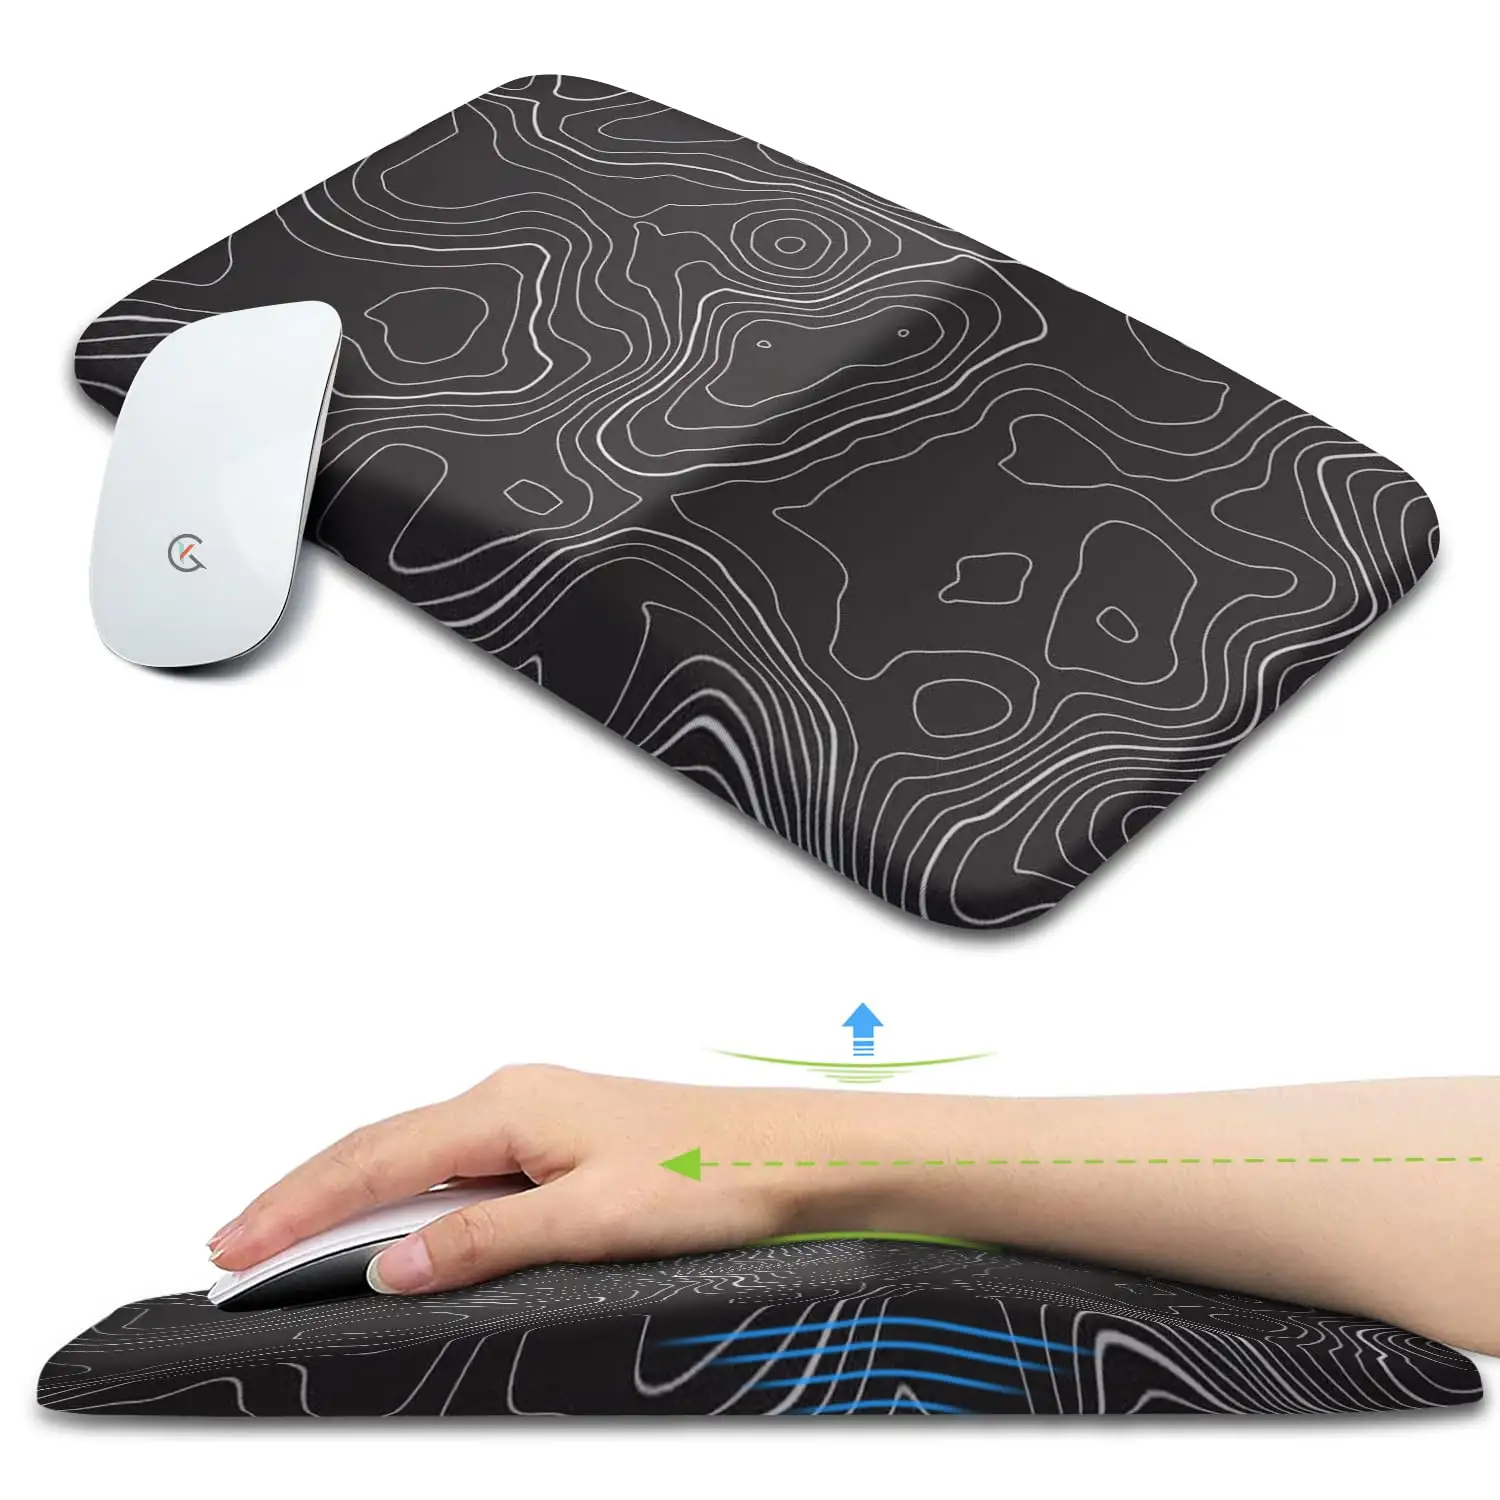 Tapis de souris ergonomique personnalisé Support de poignet antidérapant Base en Pu Tapis de souris en mousse à mémoire de forme pour le bureau à la maison